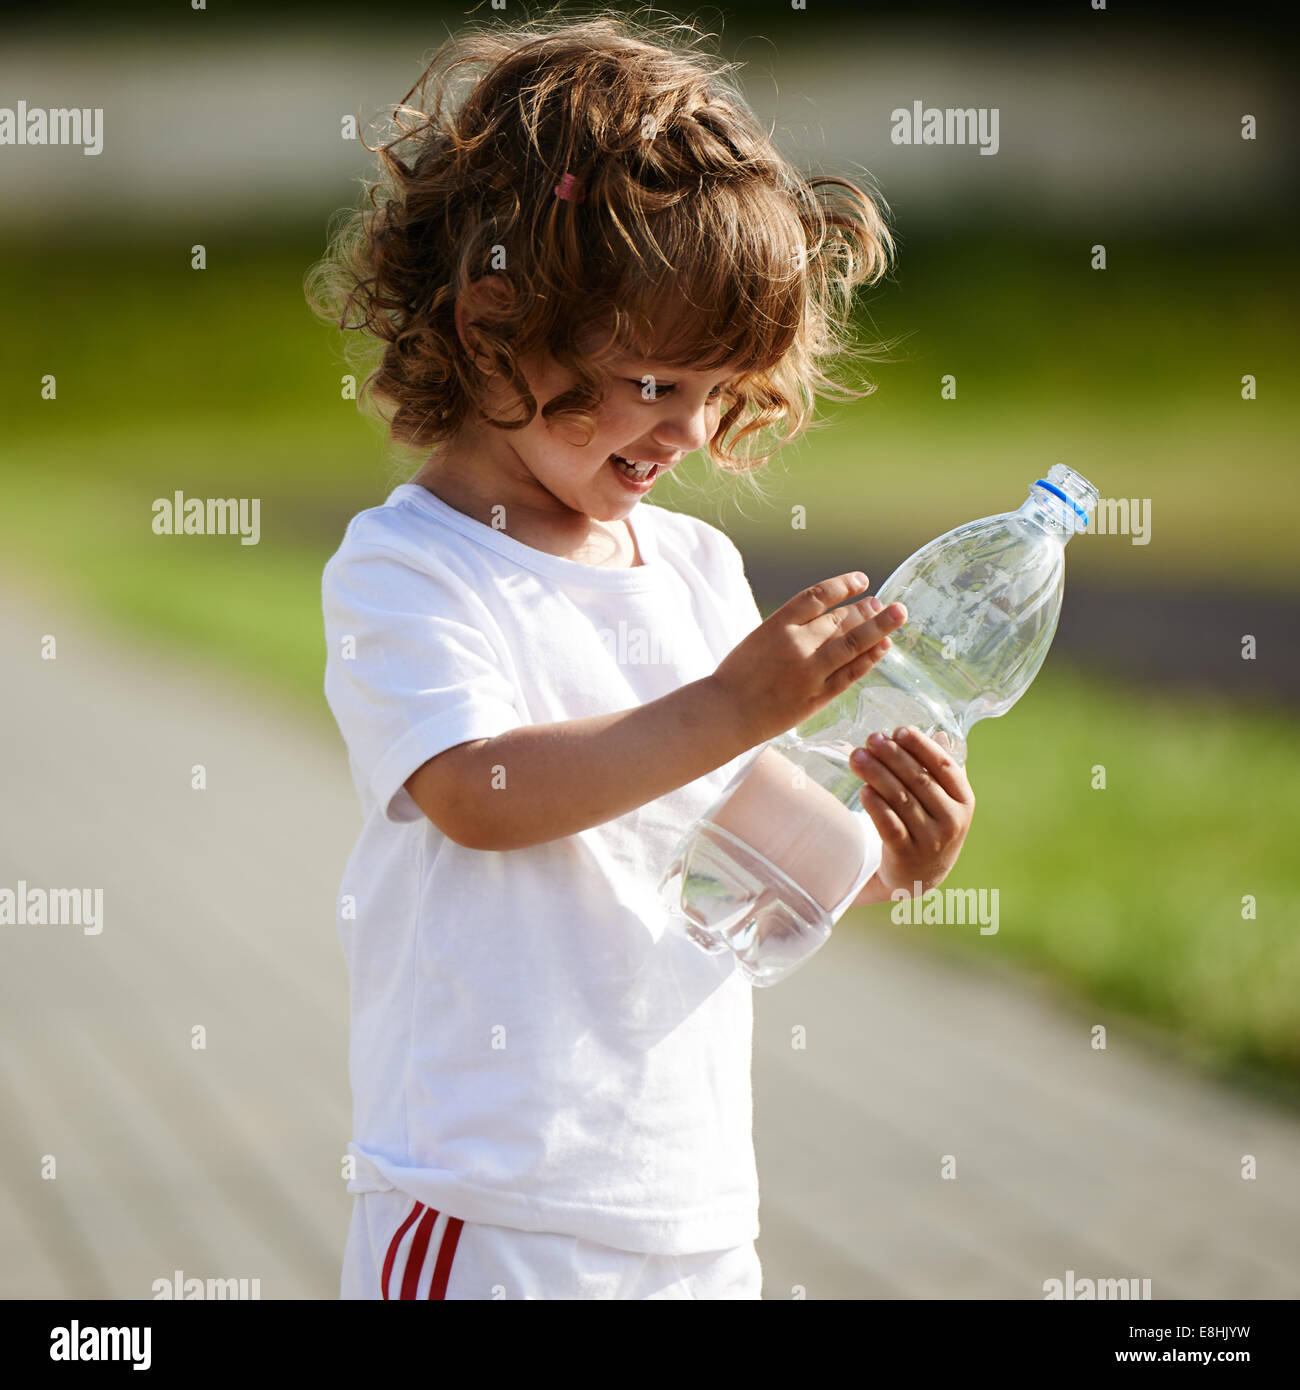 https://c8.alamy.com/comp/E8HJYW/little-girl-drinking-clean-water-from-bottle-E8HJYW.jpg